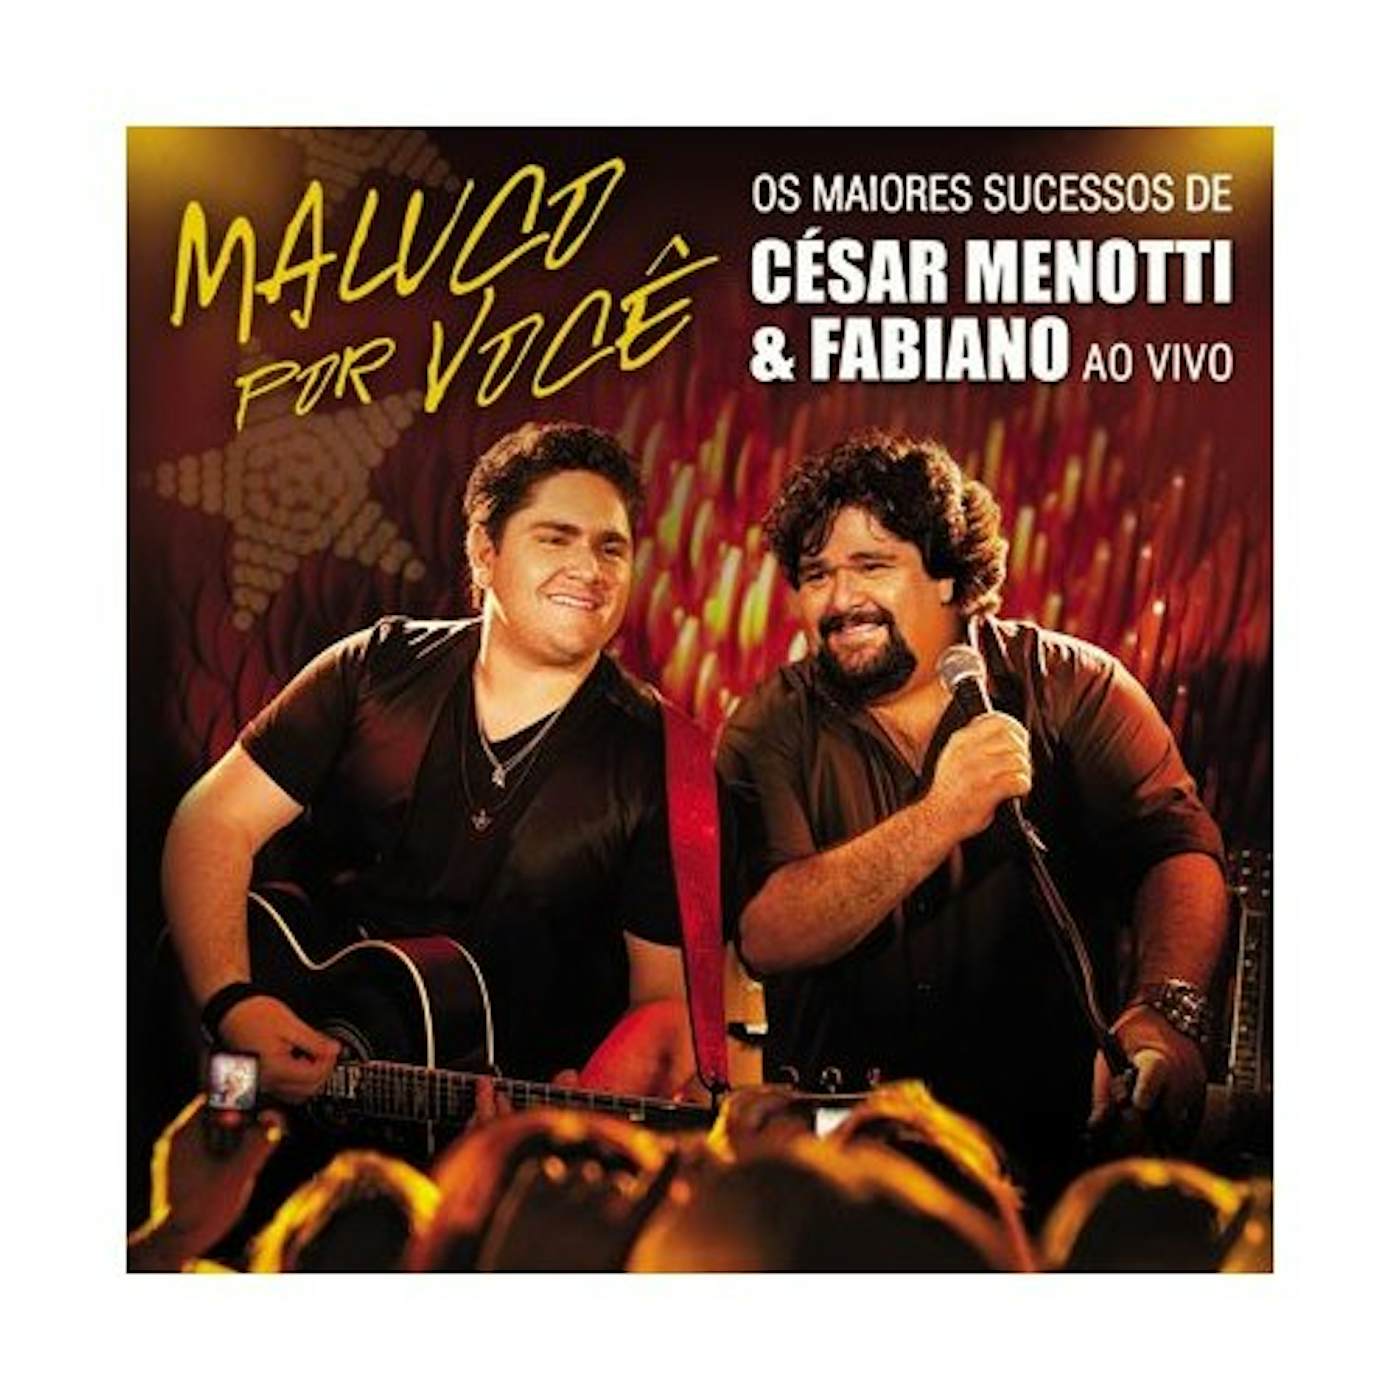 César Menotti & Fabiano MALUCO POR VOCE: OS MAIORES SUCESSOS AO VIVO CD